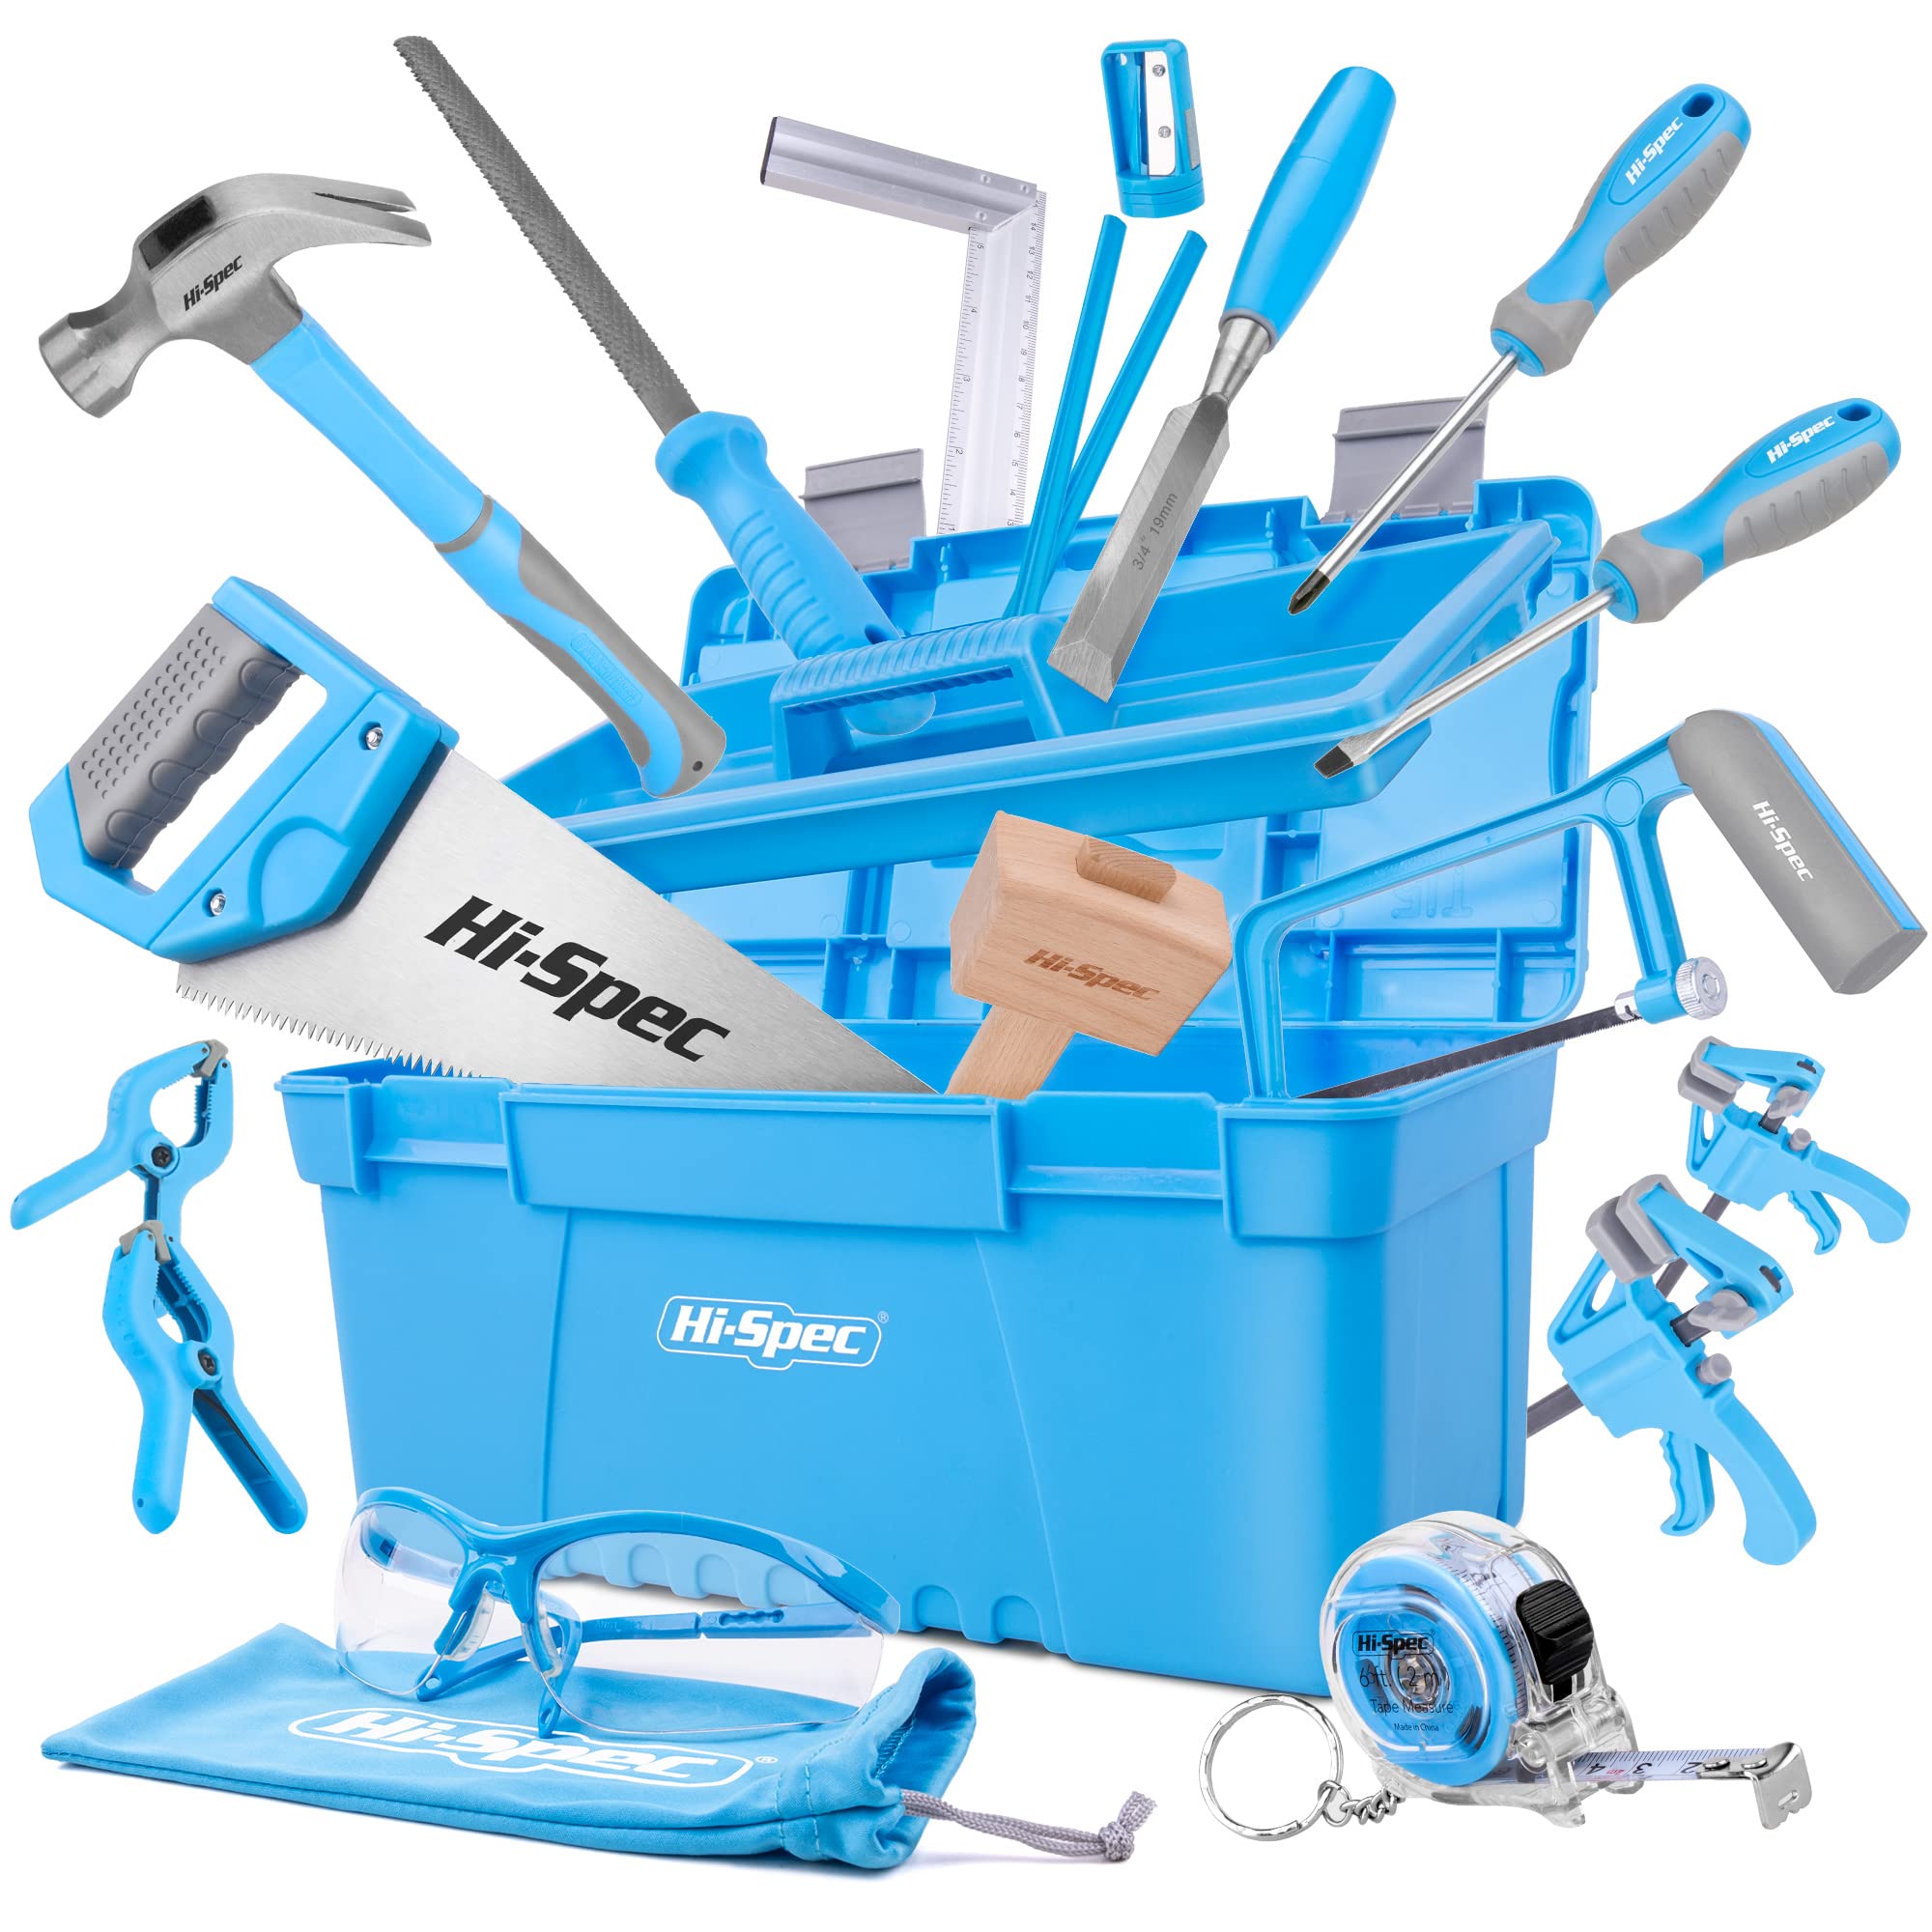 Hi-Spec 25 tlg. Werkzeug-set für Anfänger mit Werkzeugkasten, Holzschnitzwerkzeug, Holzmeißel und Holzhammer, Handsäge, Bügelsäge und mehr für Kinder und junge Tischler